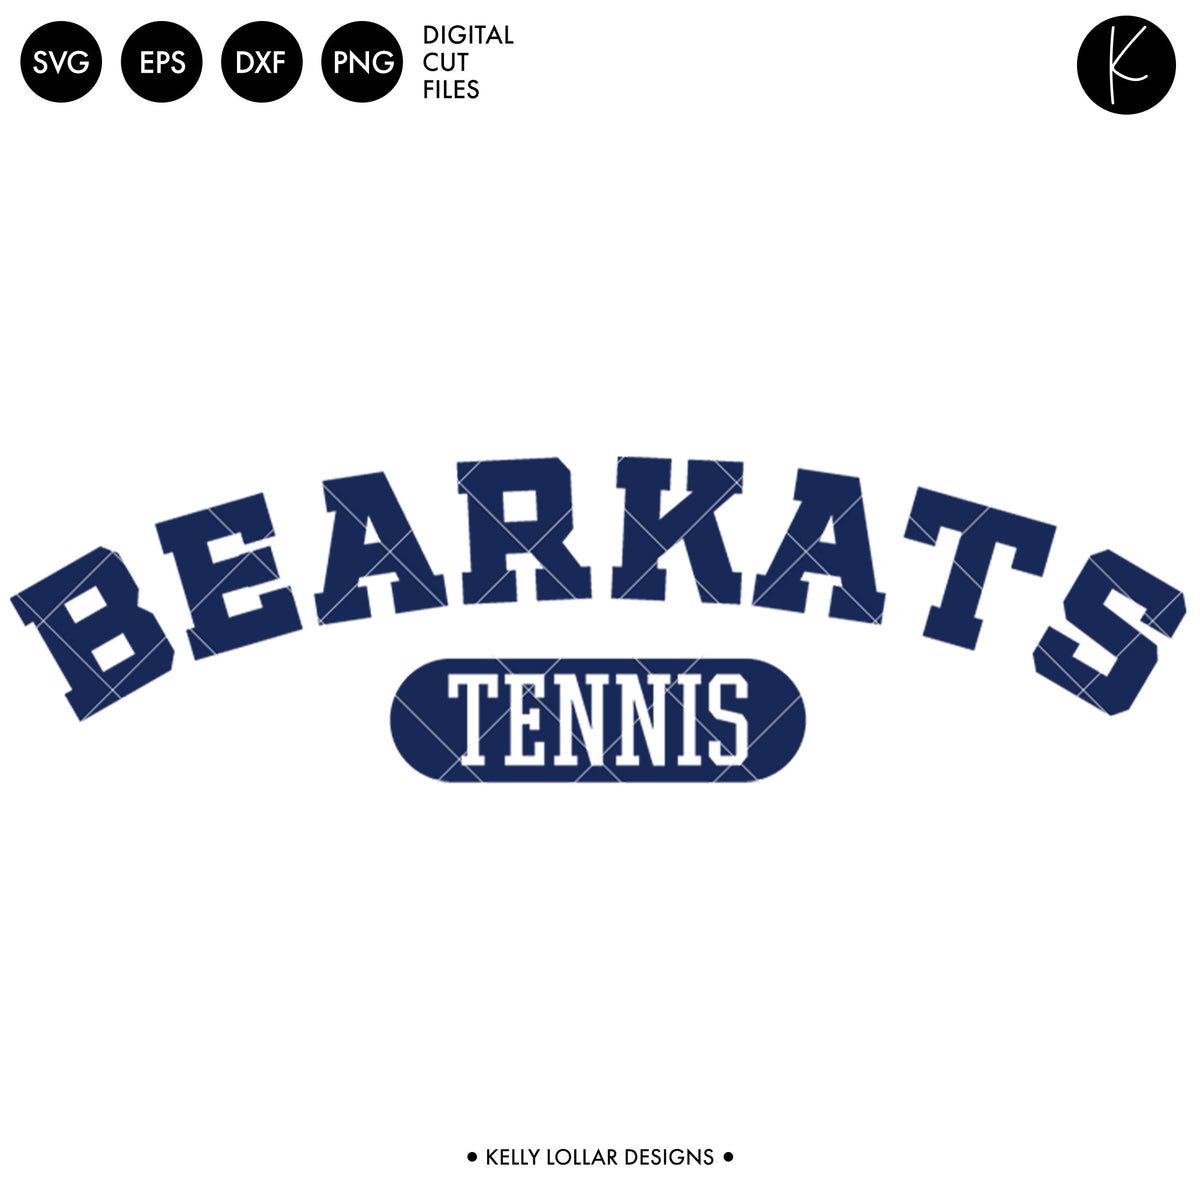 Bearkats Tennis Bundle | SVG DXF EPS PNG Cut Files